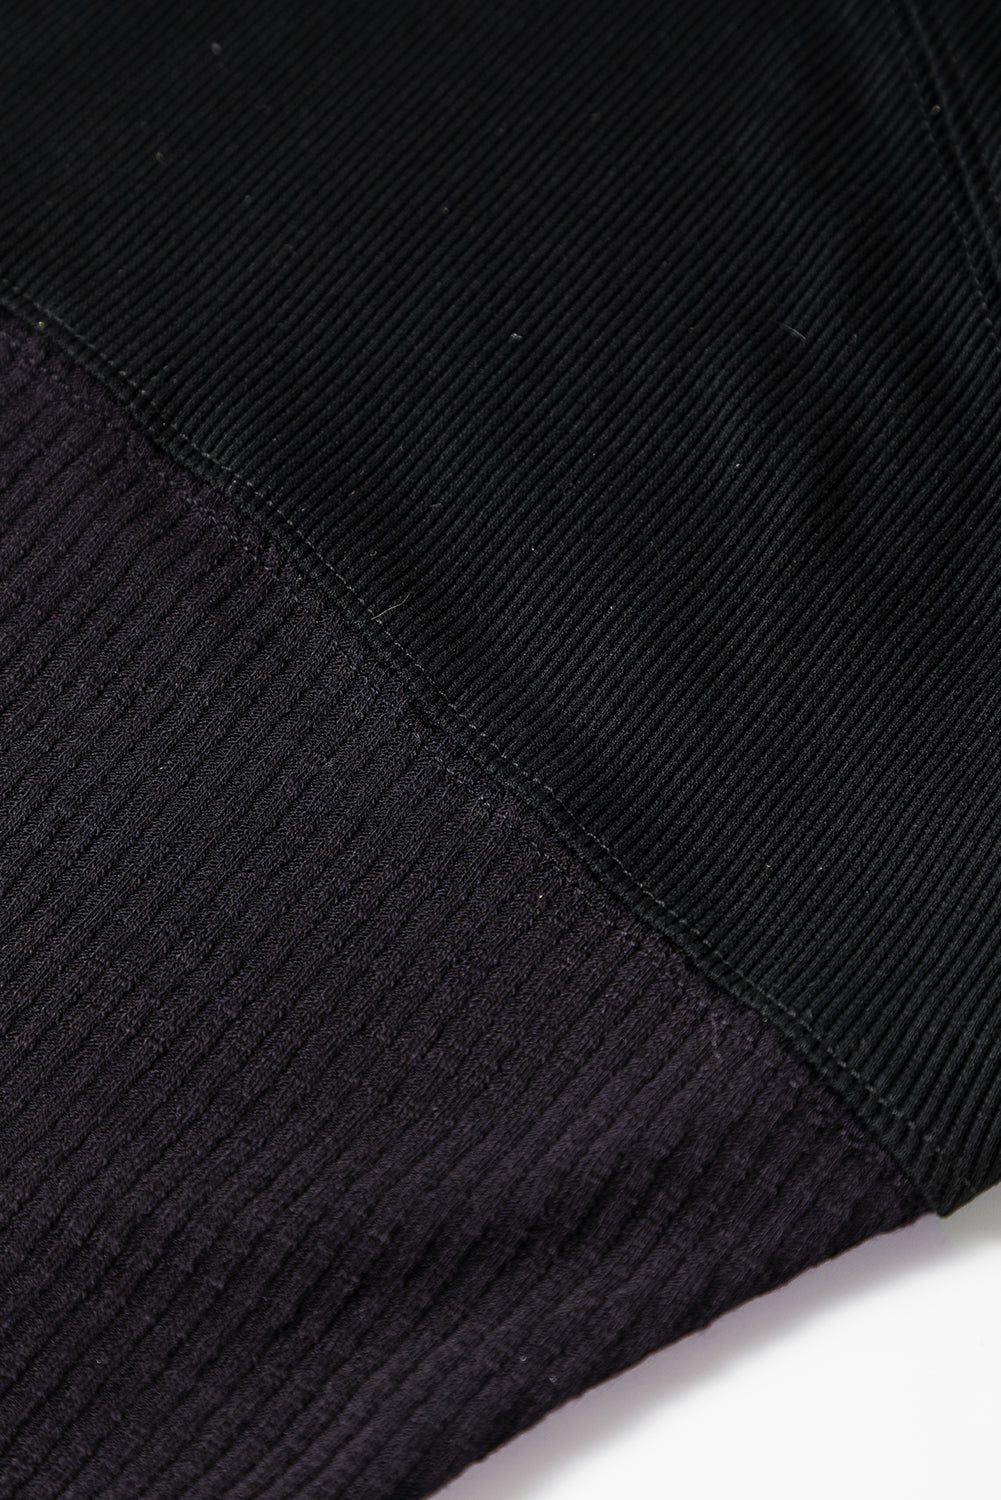 Schwarzes, langärmliges Oberteil aus geripptem Strick mit Druckknöpfen